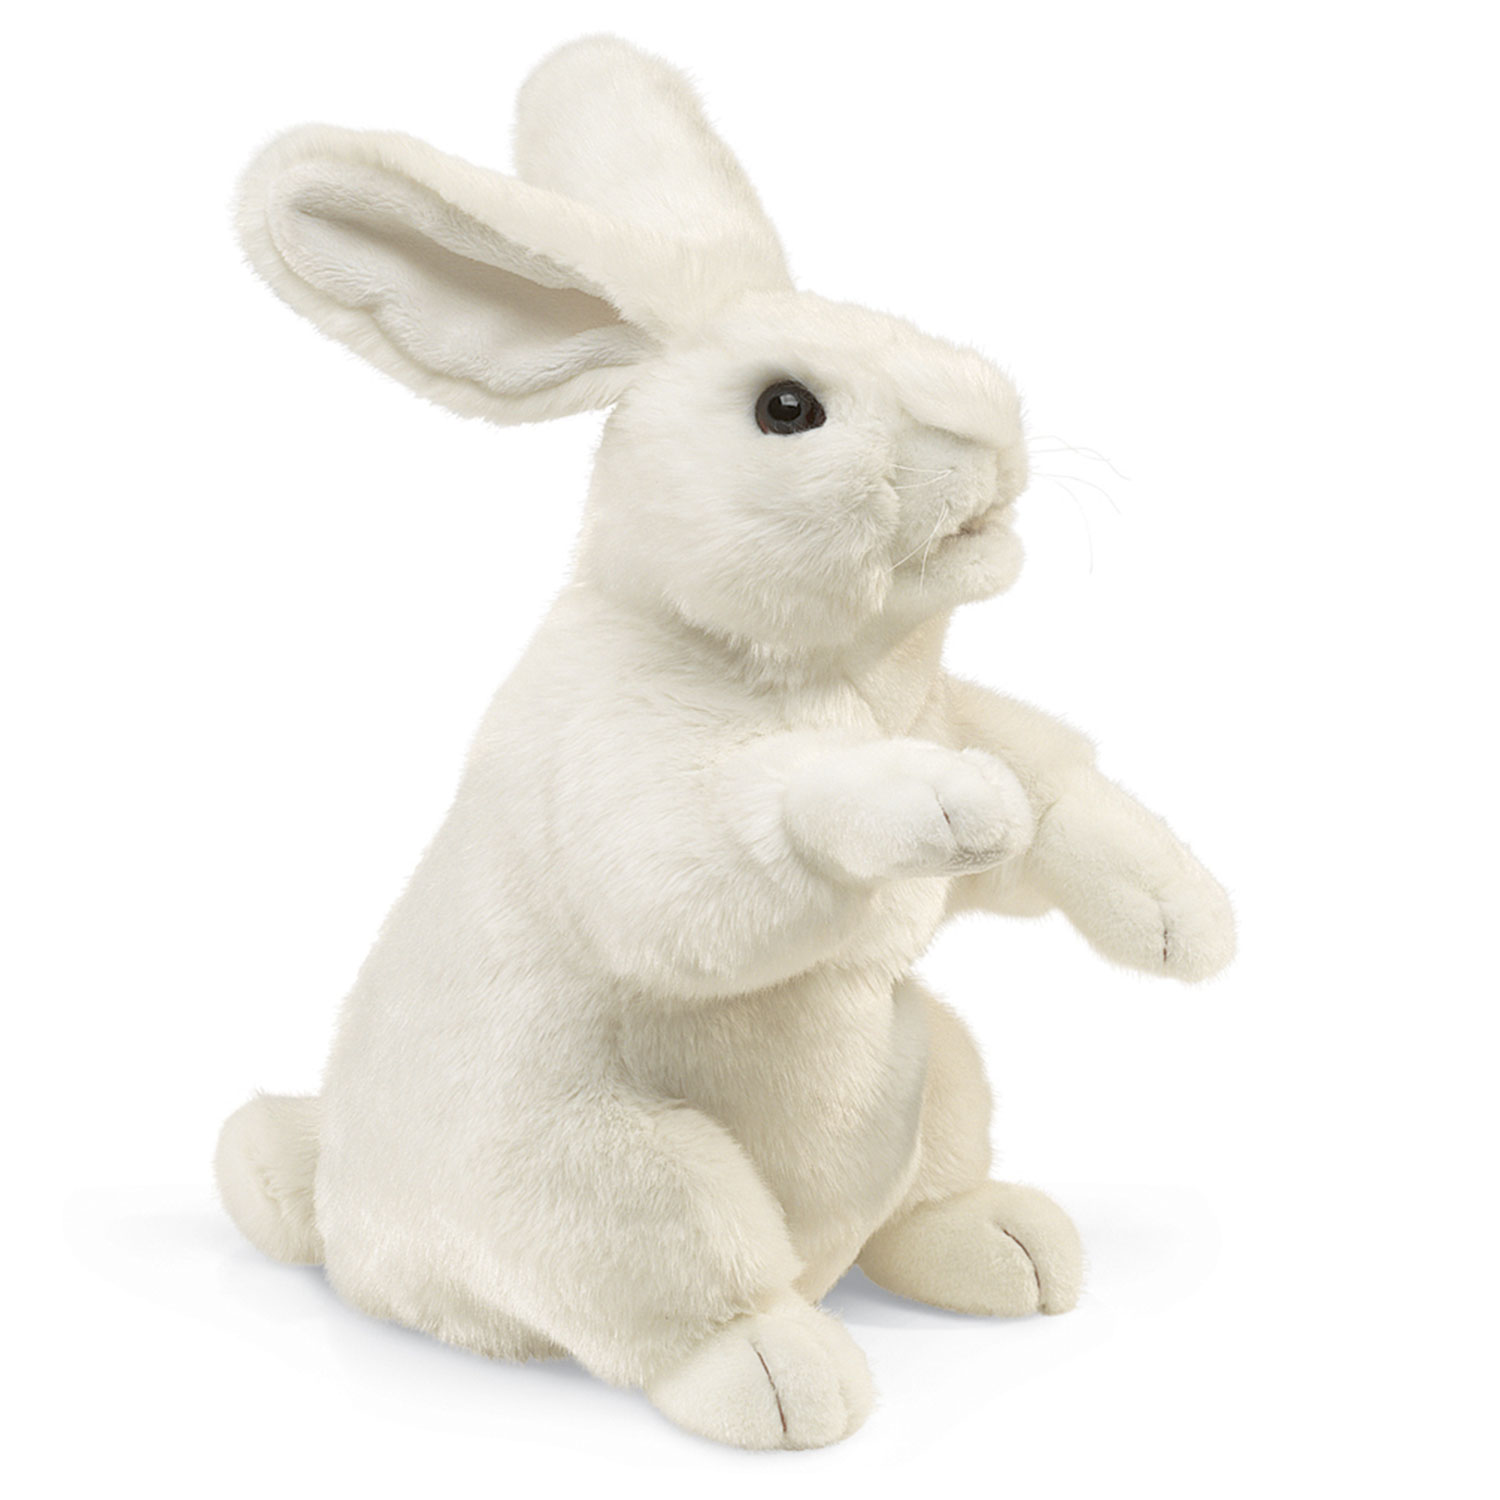 Weißer Hase, stehend / Standing White Rabbit